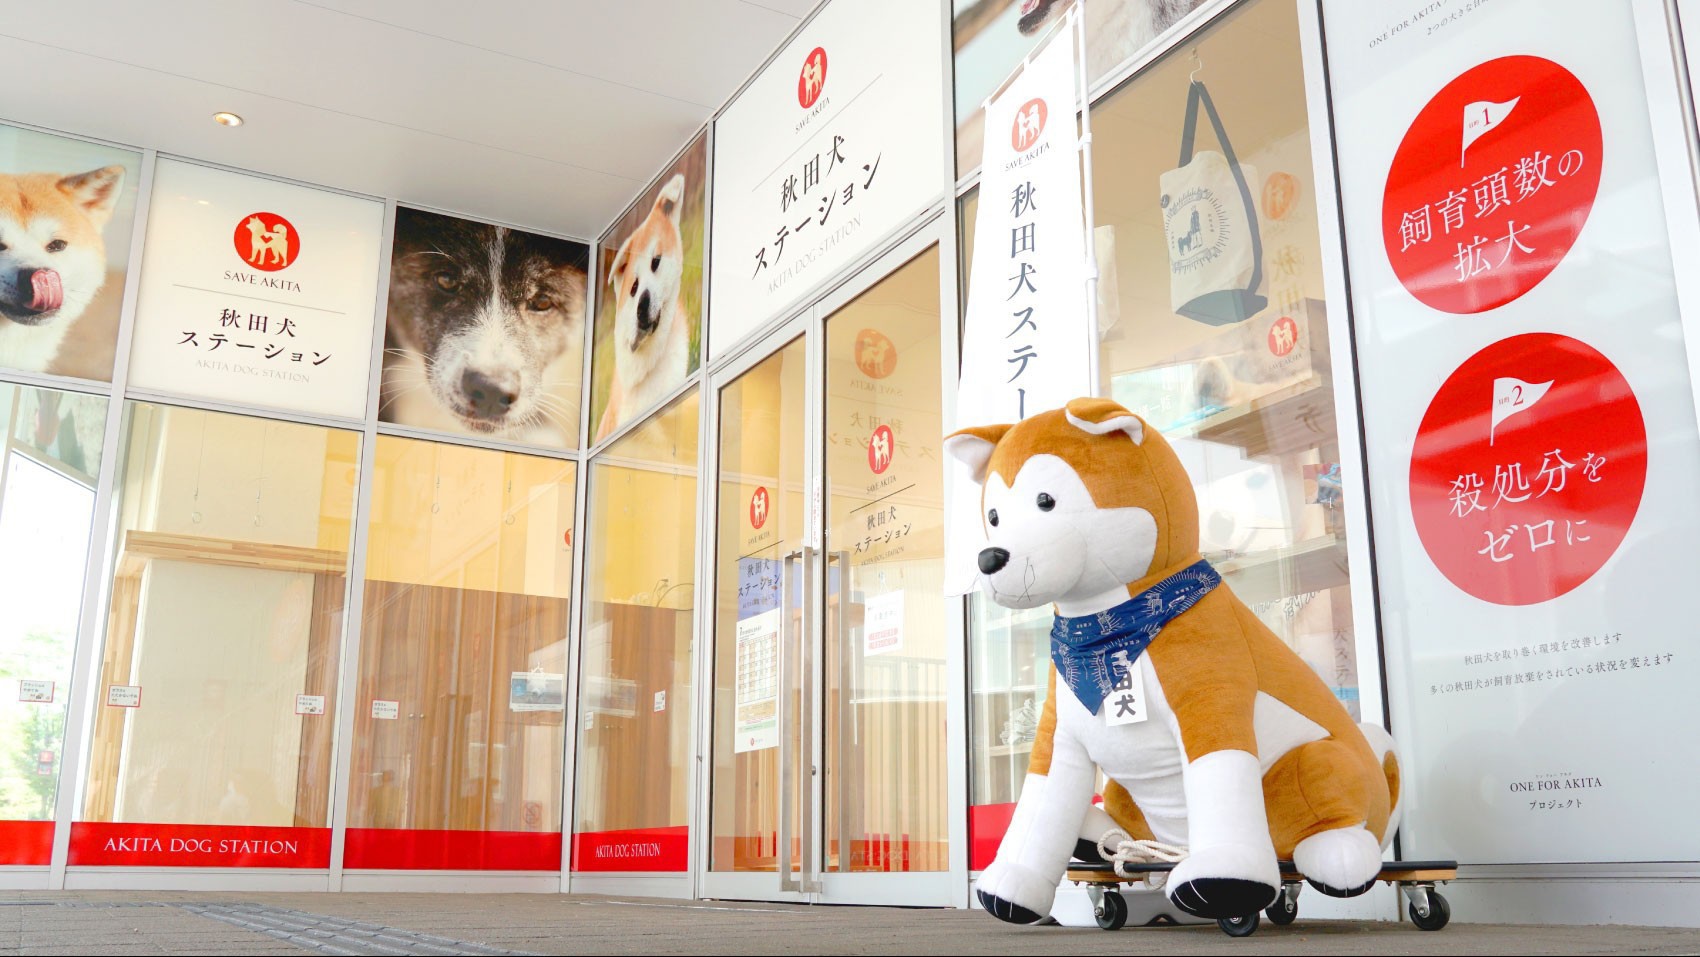 【秋田犬ステーション】秋田犬の愛くるしい姿を間近で見れるのが嬉しい。曜日限定なので事前に確認を。